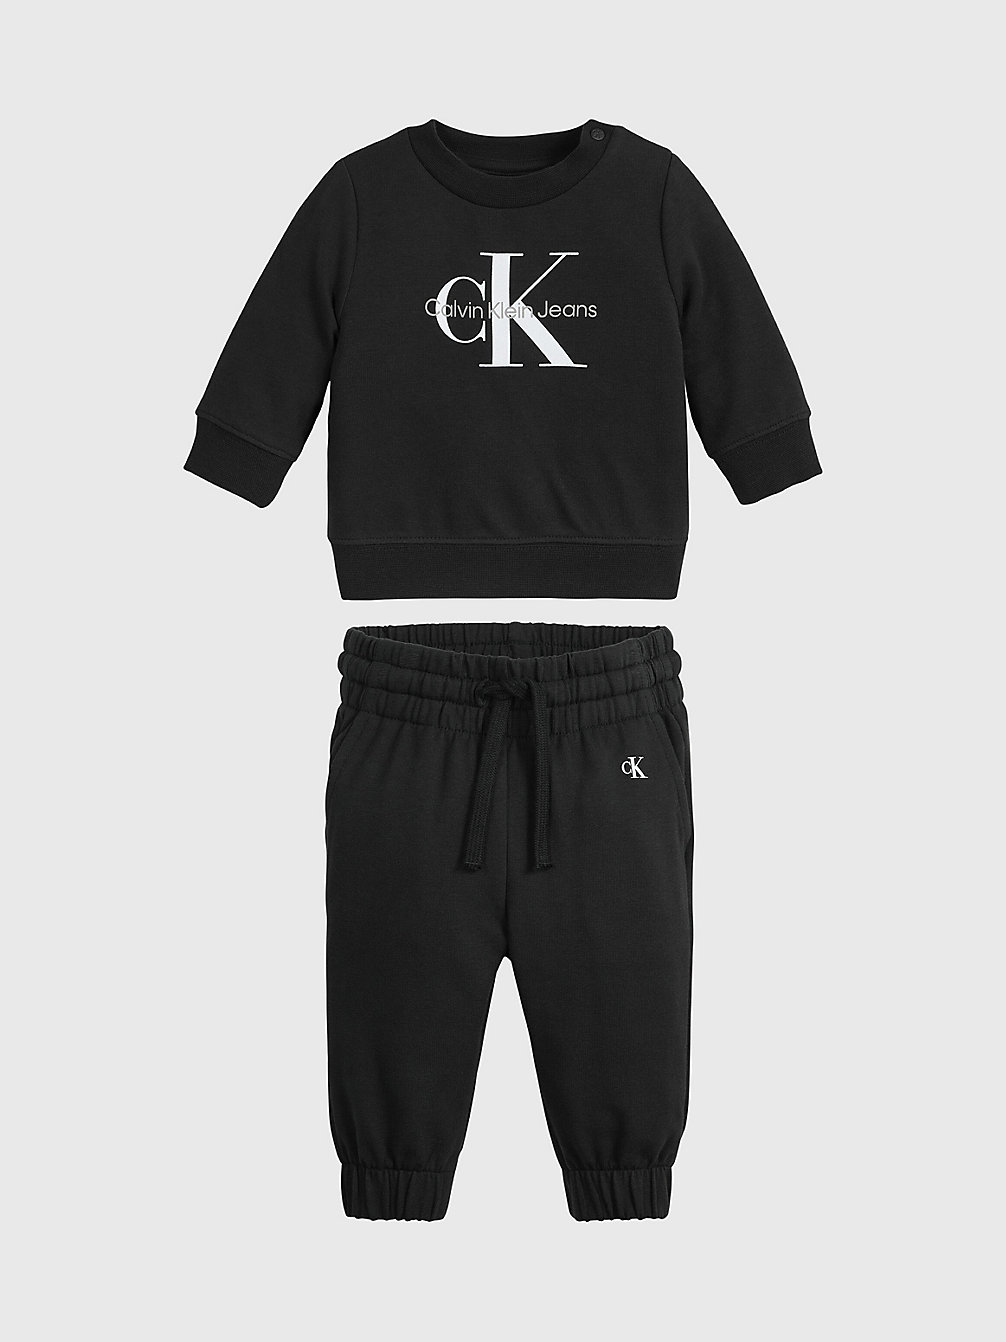 CK BLACK > Logo-Trainingsanzug Für Babys > undefined newborn - Calvin Klein